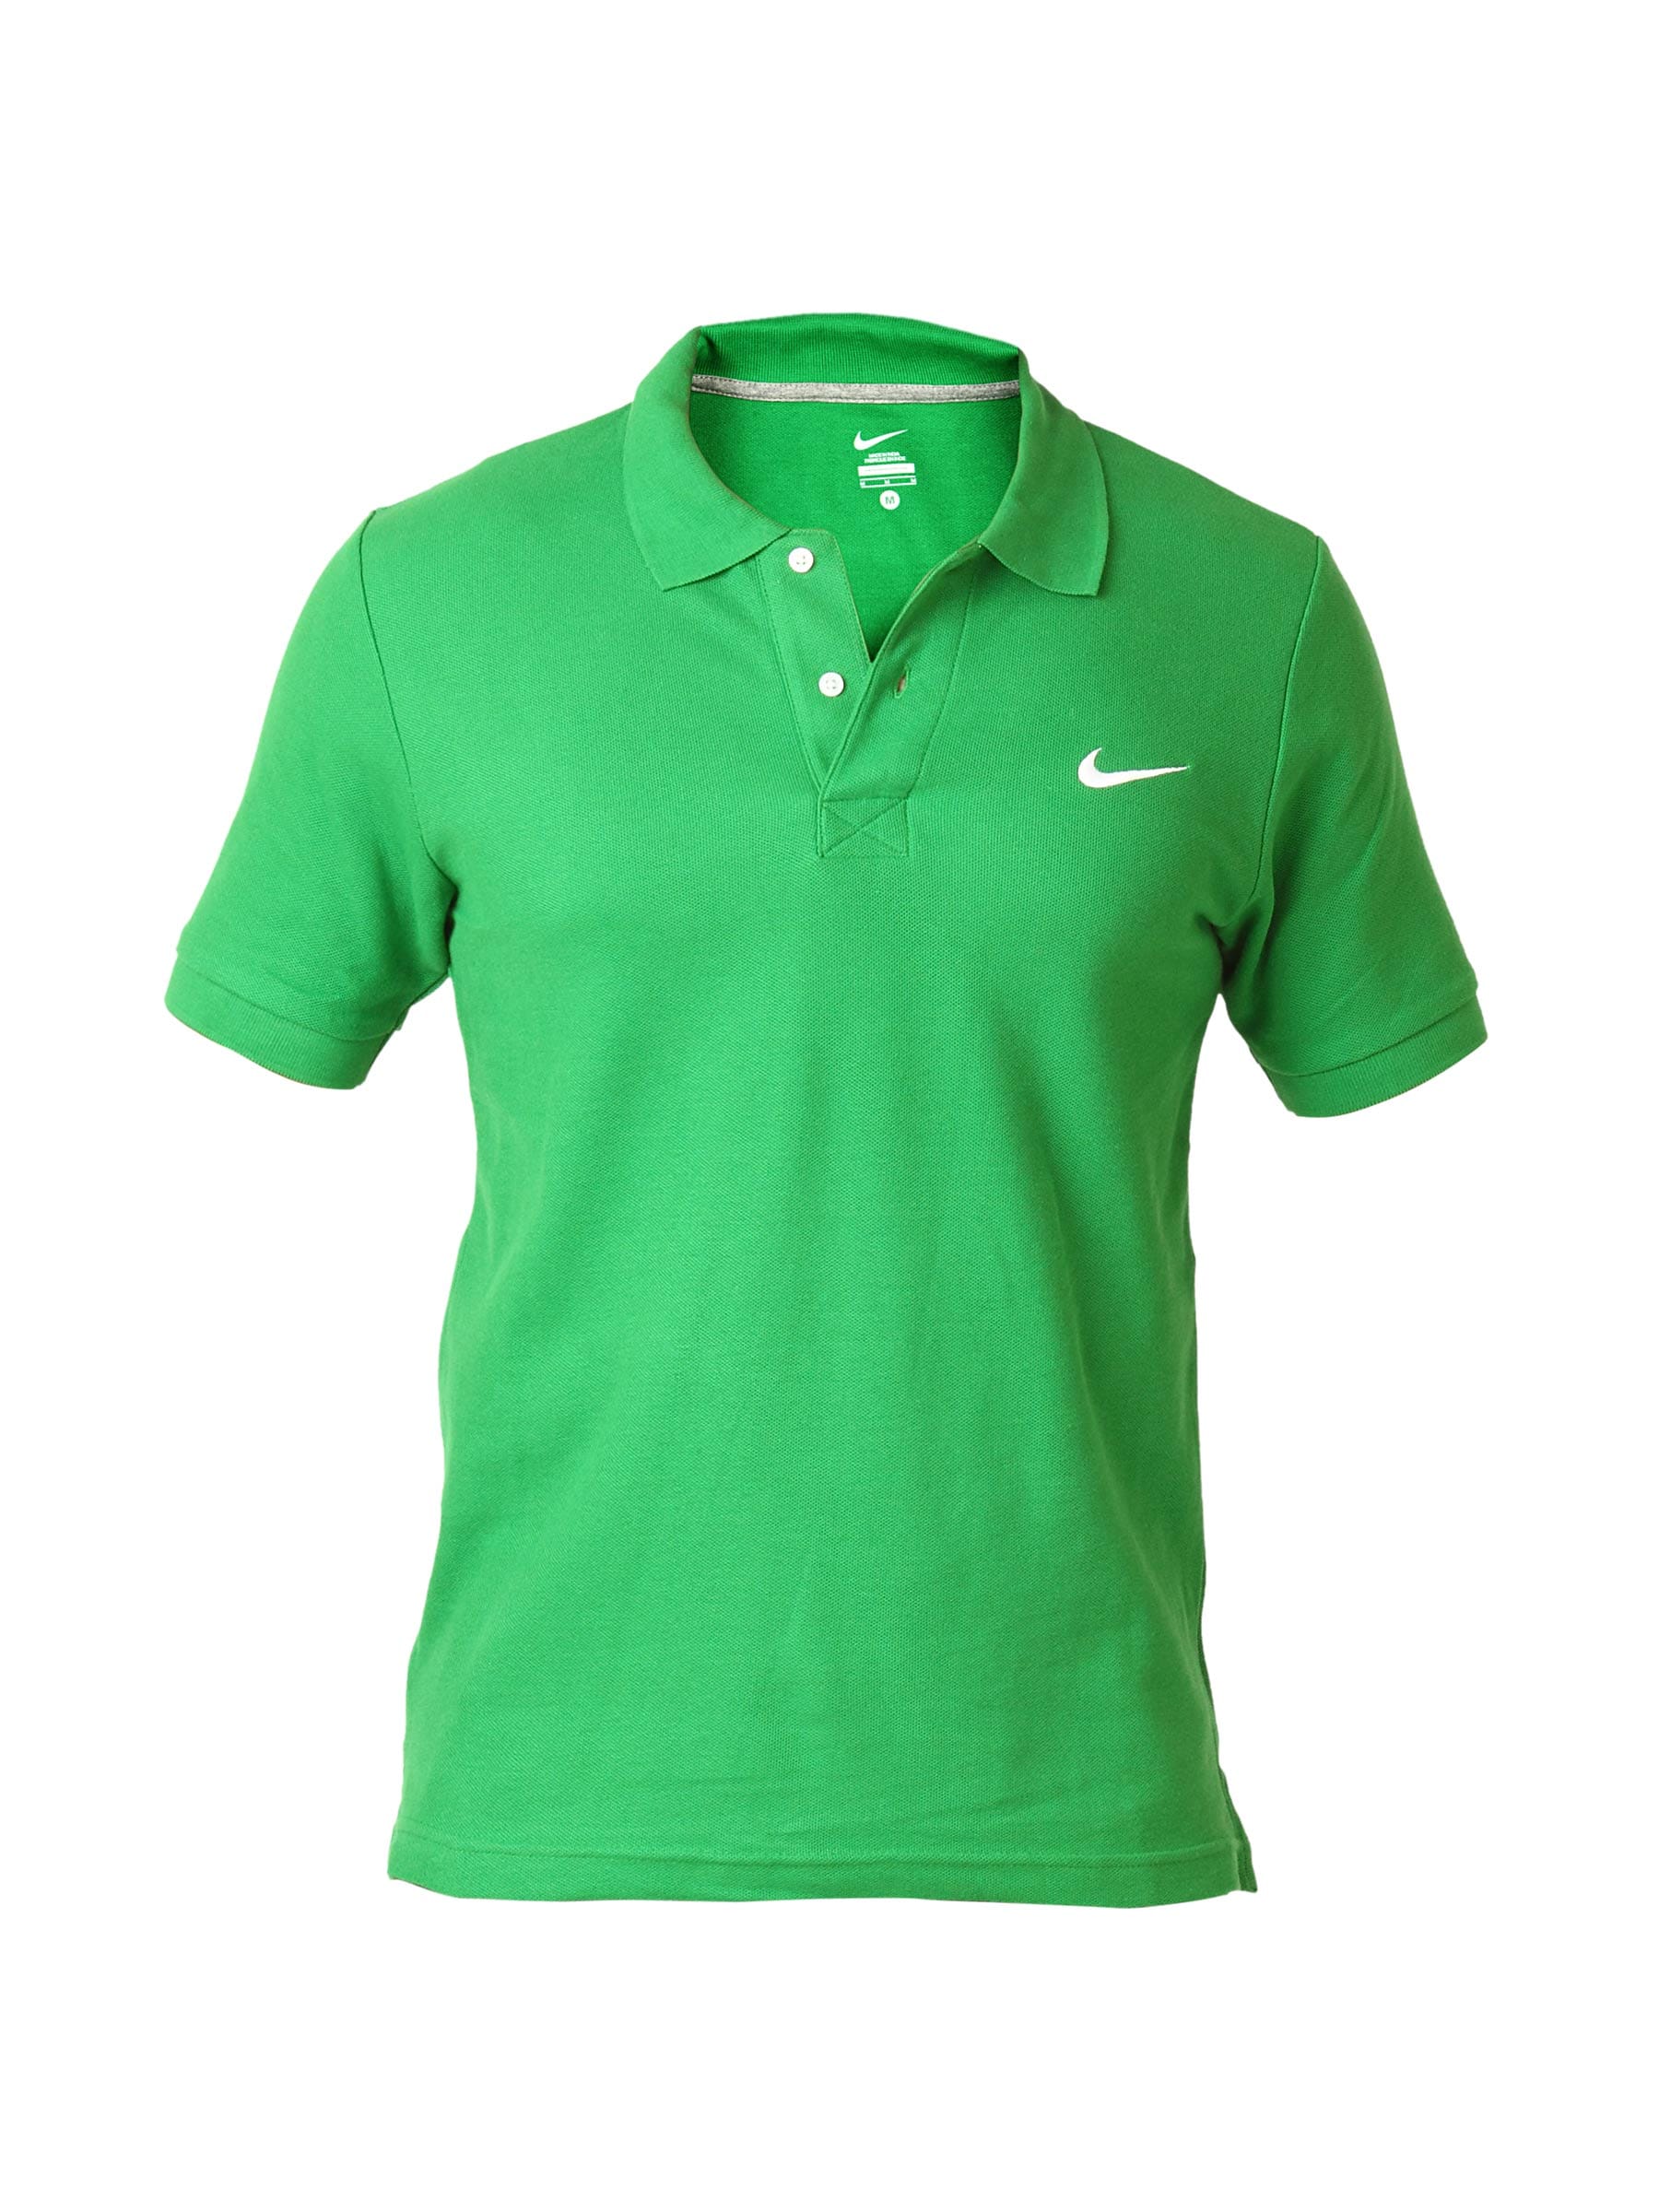 Nike Men Green Polo Tshirts